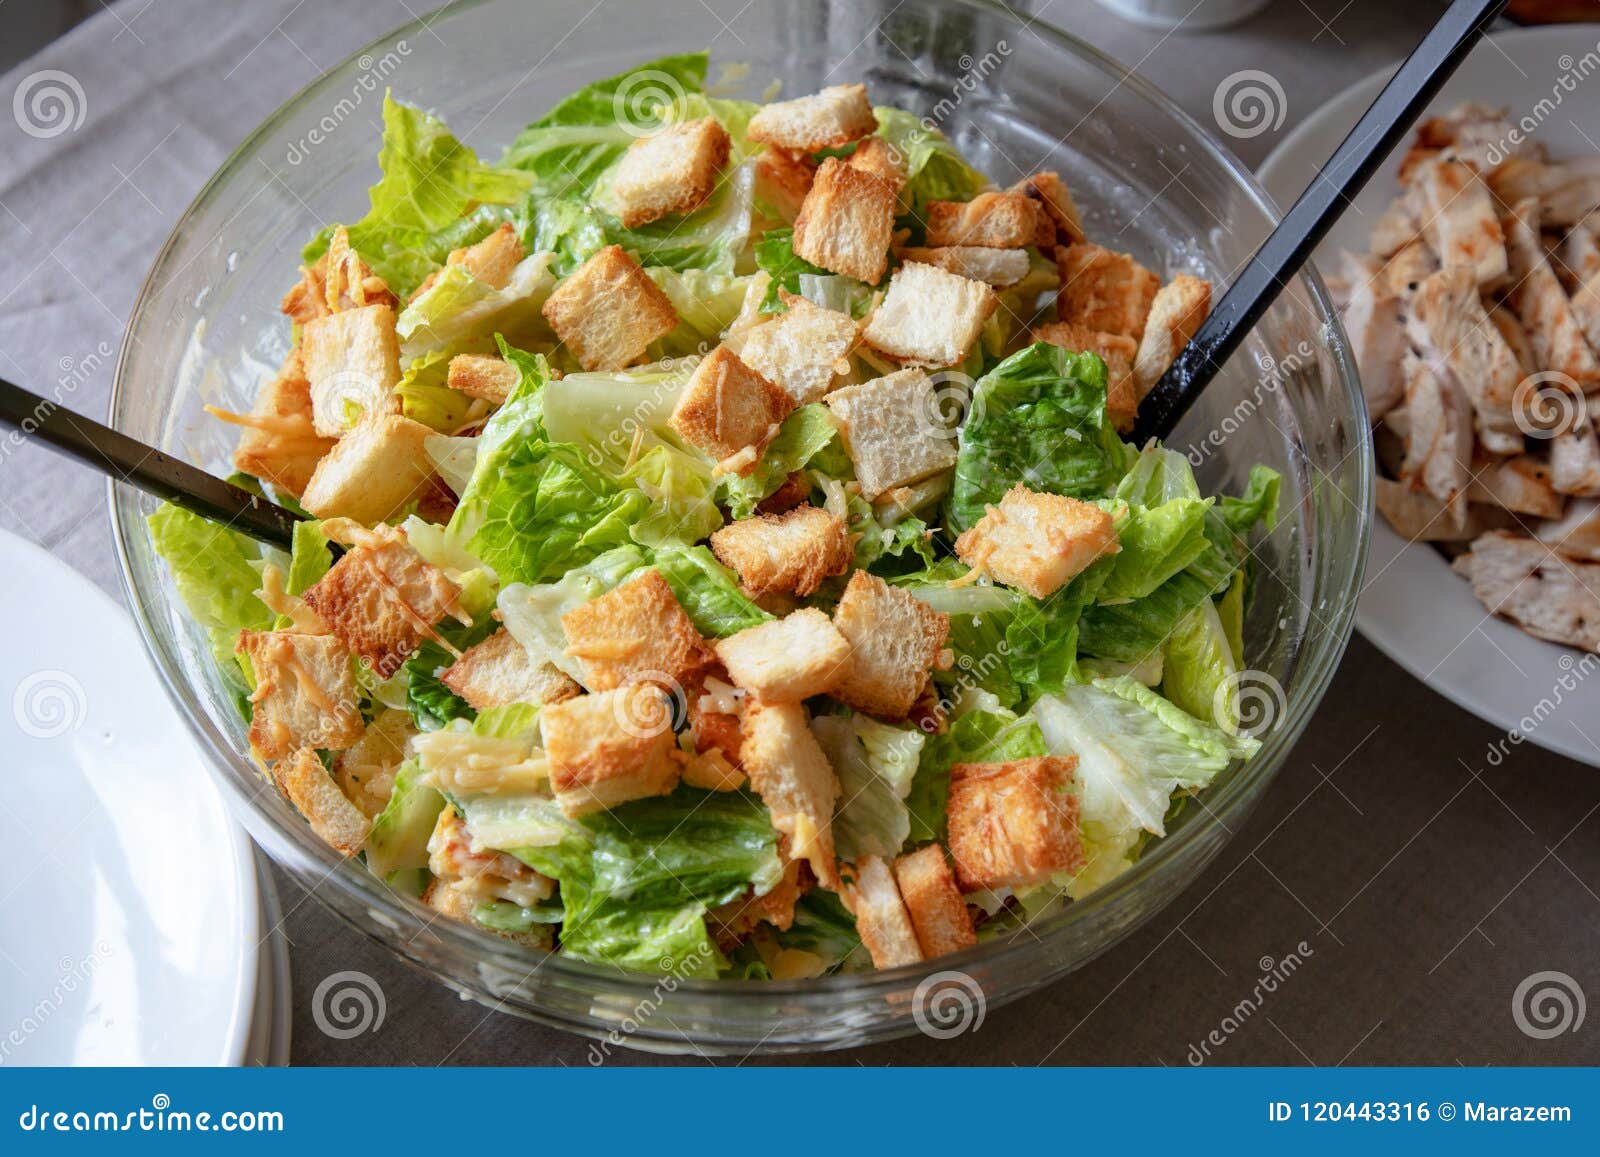 bowl of cesar salad